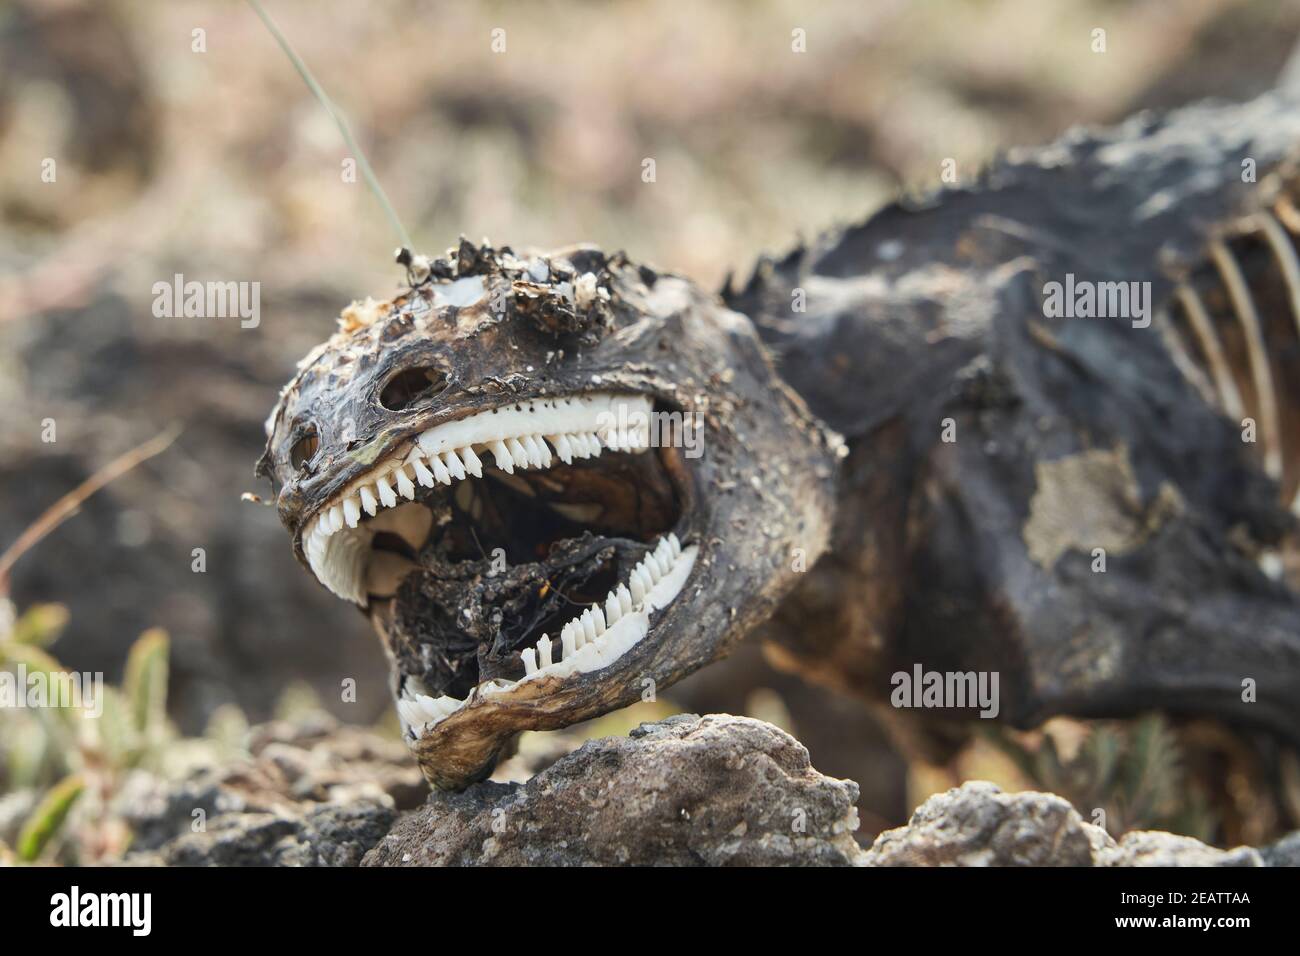 Galapagos Land iguana, Conolophus subcristatus. Portrait à faible profondeur de champ d'un corps lézard mort et décomposé, ressemblant à un dinosaure avec humour Banque D'Images